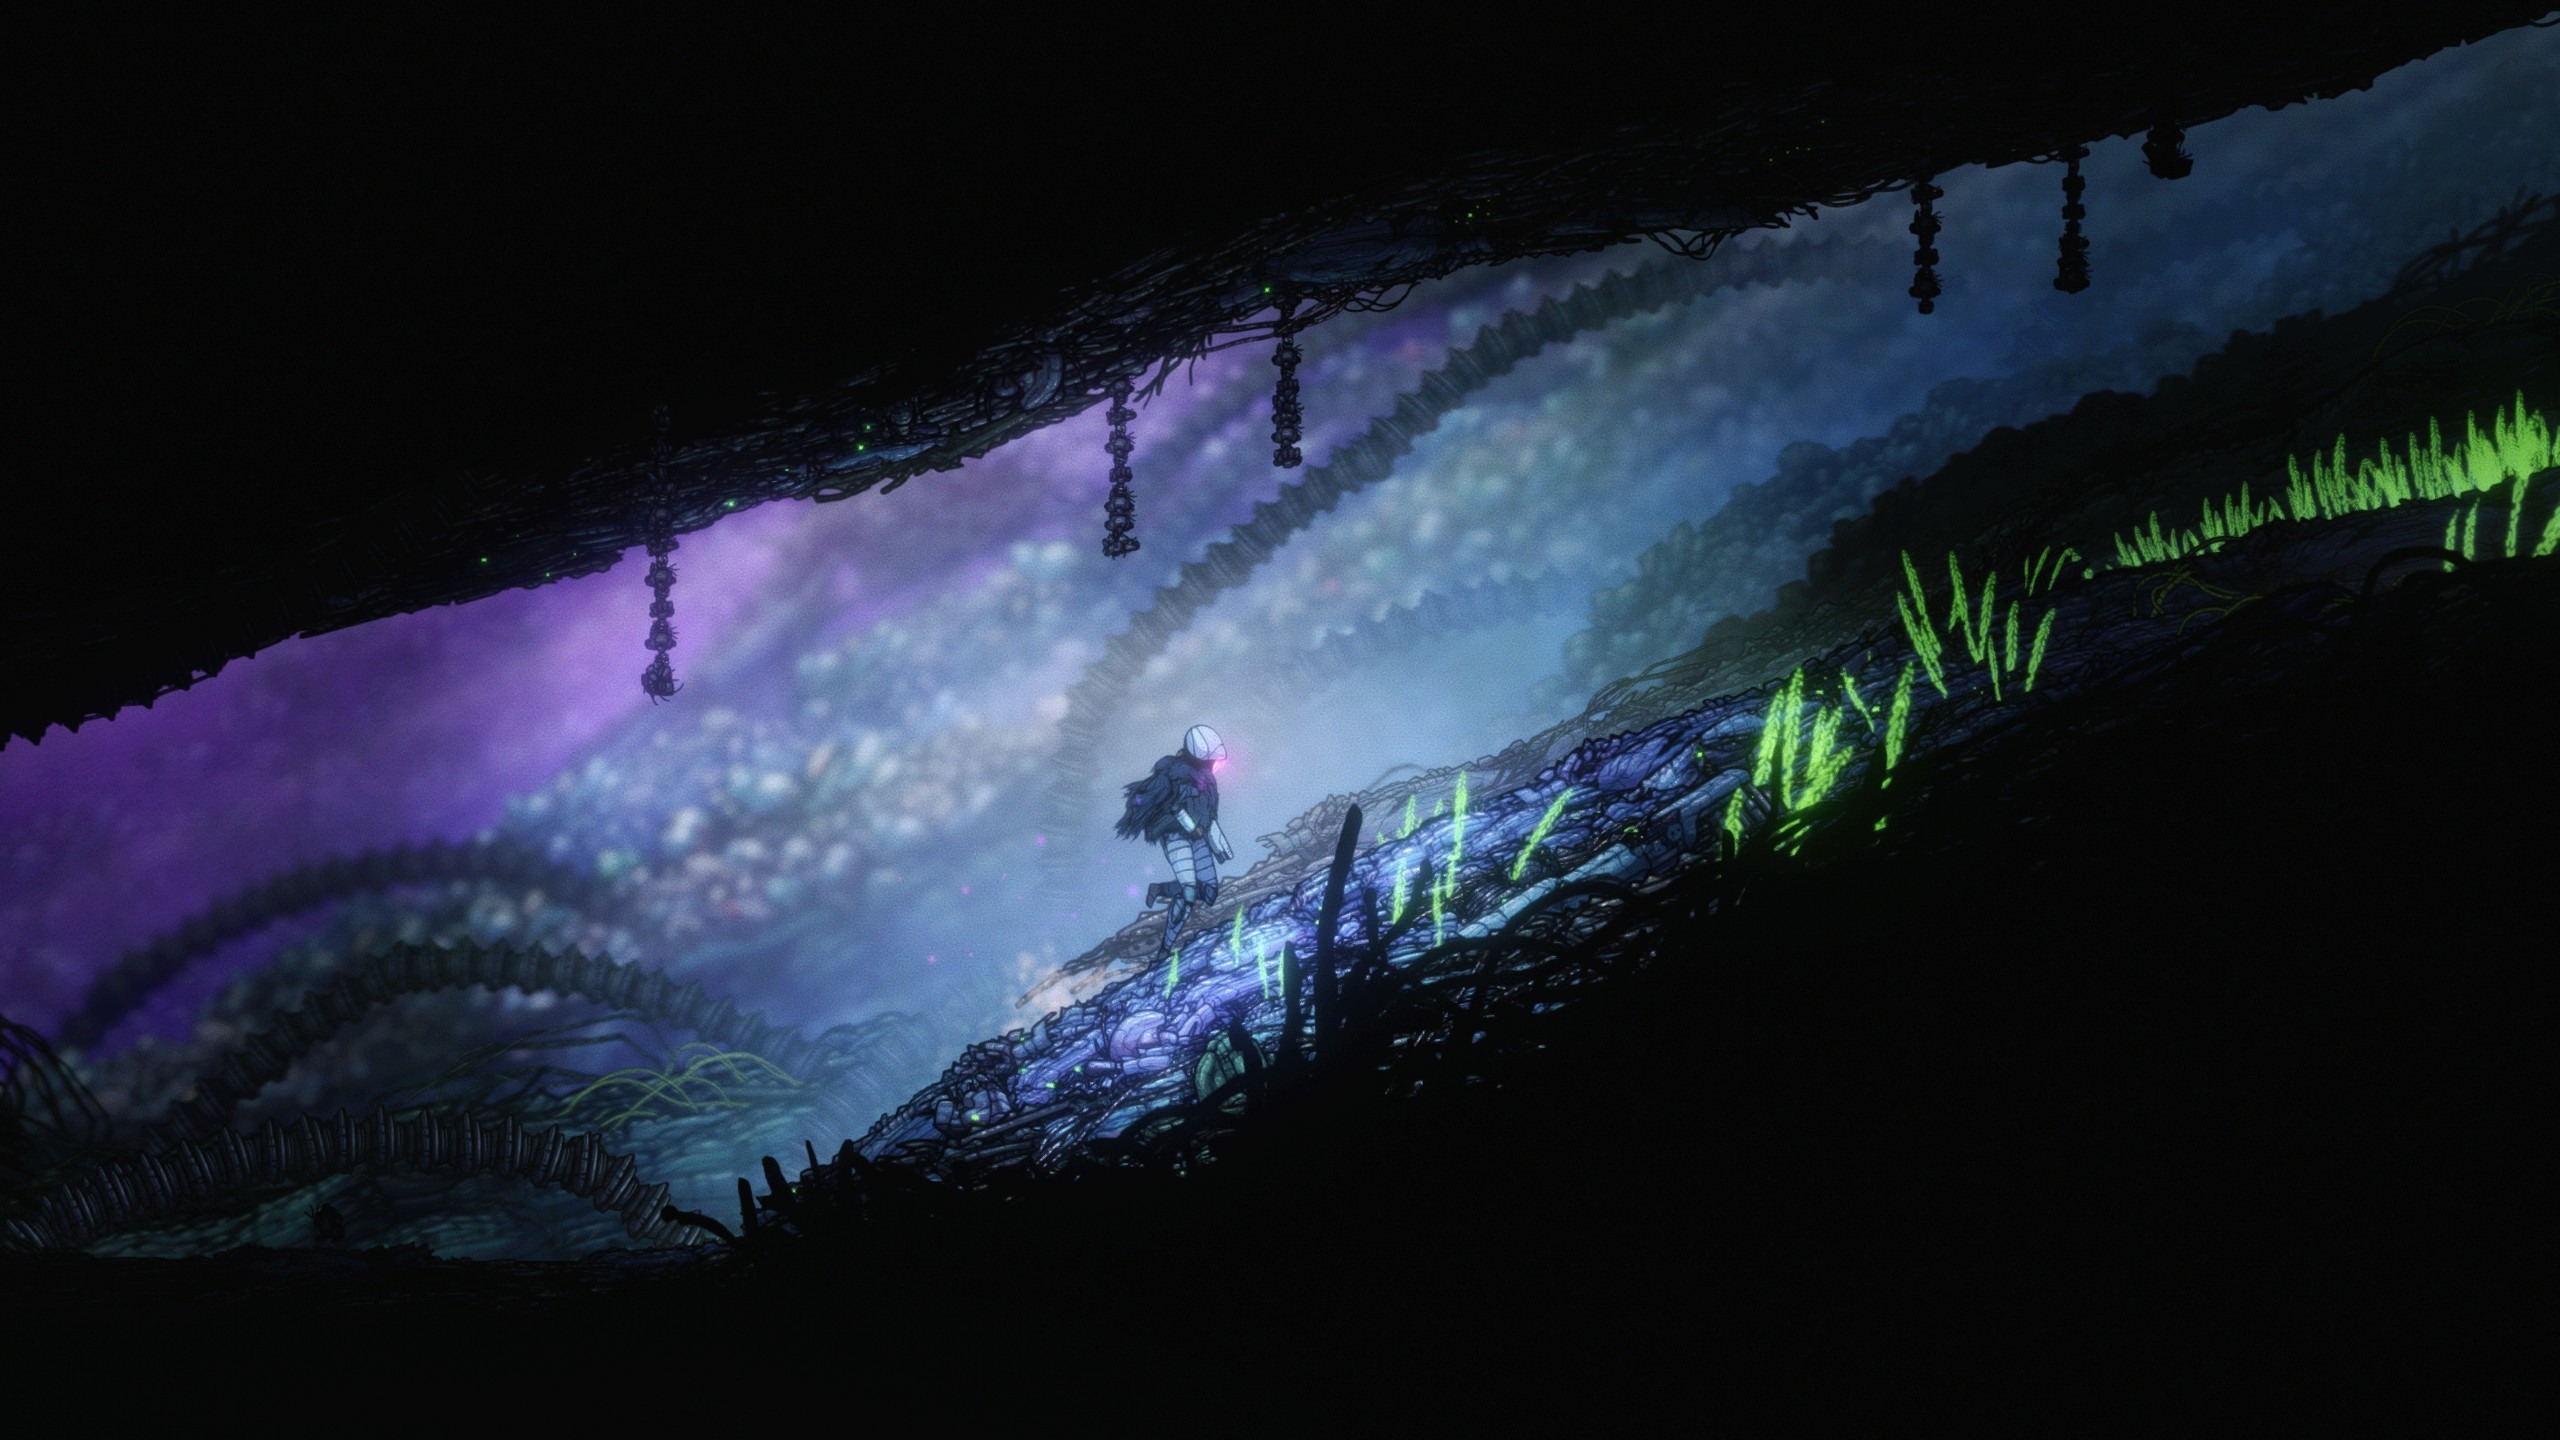 新款类银河战士恶魔城 2D 动作游戏《幽魂之歌》正式发售 新影片展示游戏战斗